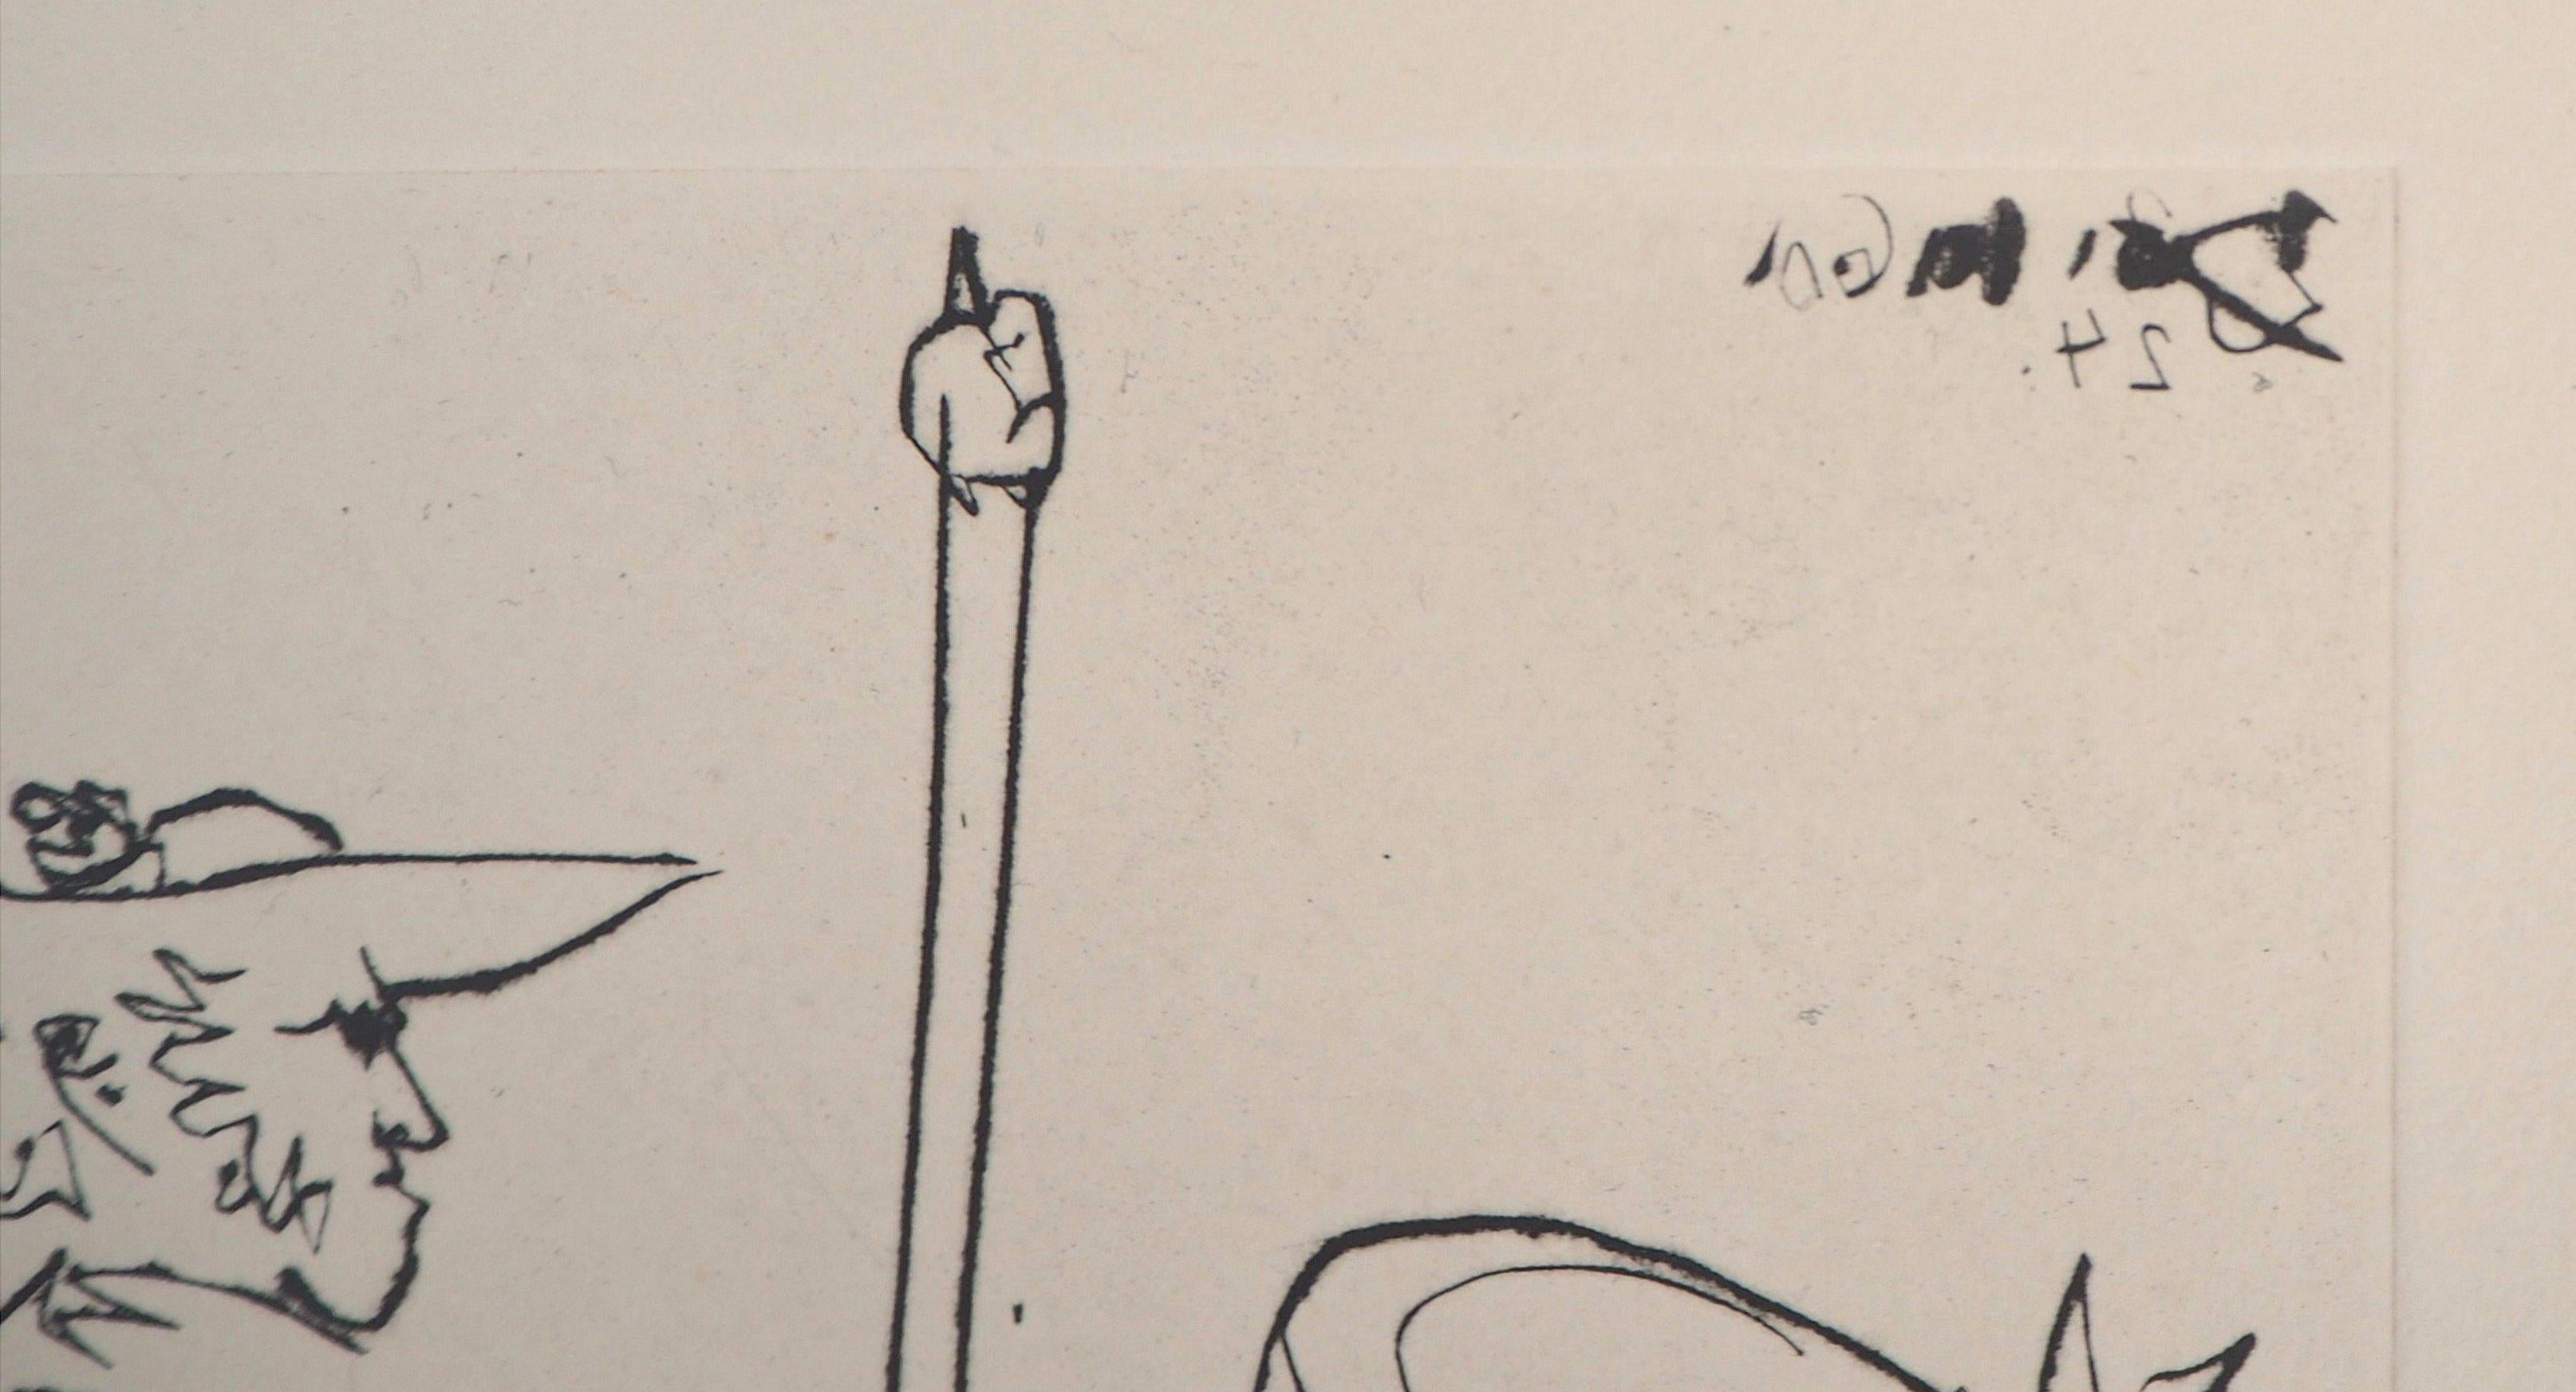 Pablo Picasso
Cavalier (Le Carmen Des Carmen), 1960

Gravure originale
Daté dans la plaque
Sur vellum, 35 x 26 cm (c. 13,7 x 10,2 inch)

REFERENCE : Catalogue raisonné Bloch #1000

Excellent état